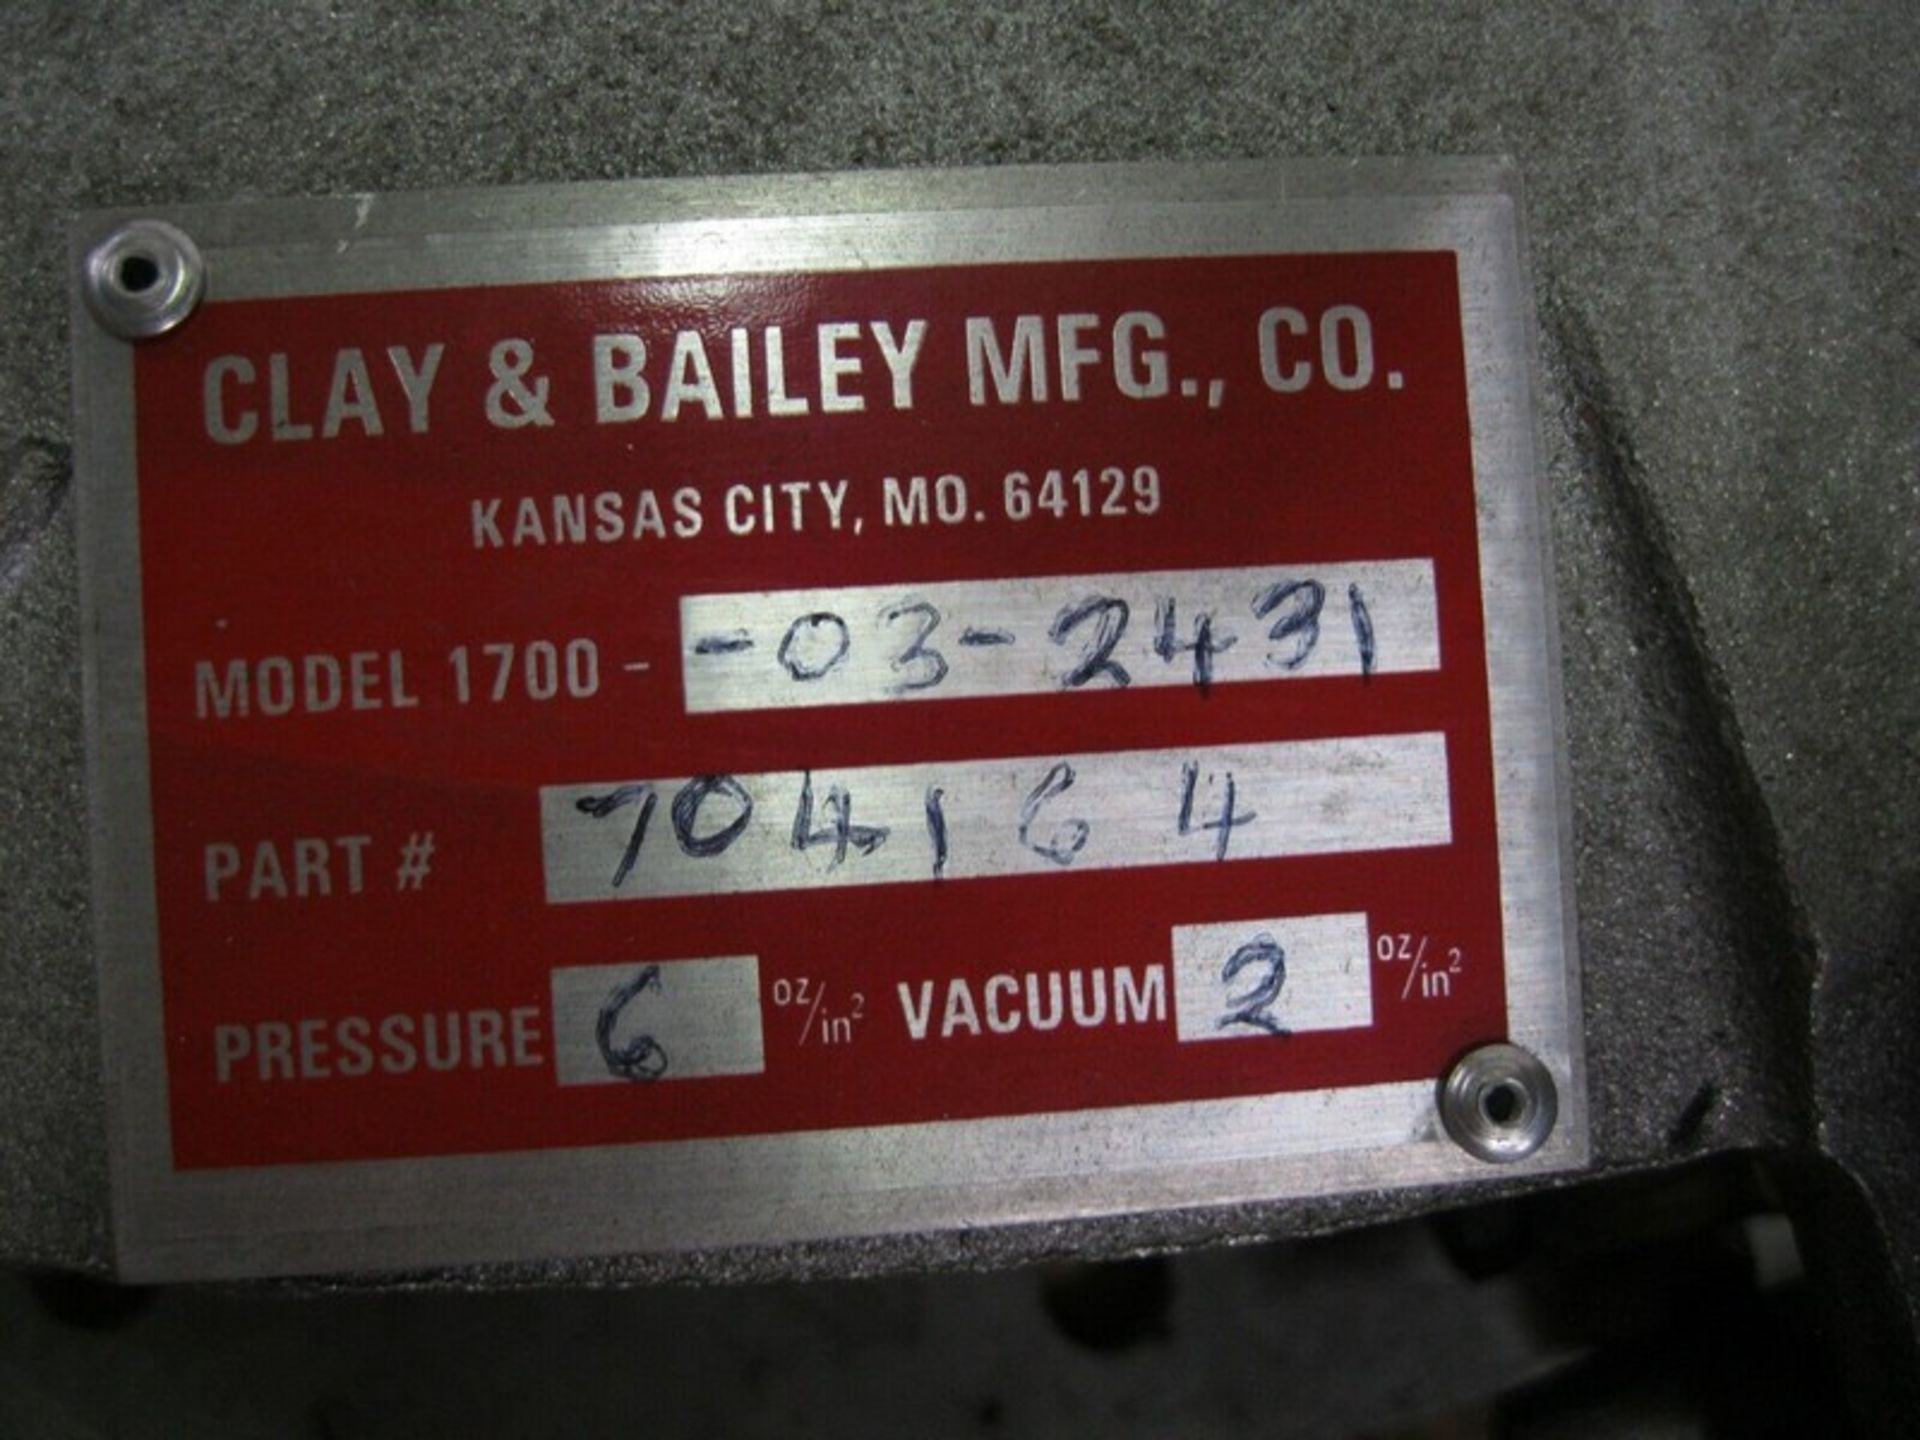 Clay & Bailey 1700-03-2431 Pressure/Vacuum Manhole NEW - Bild 4 aus 5